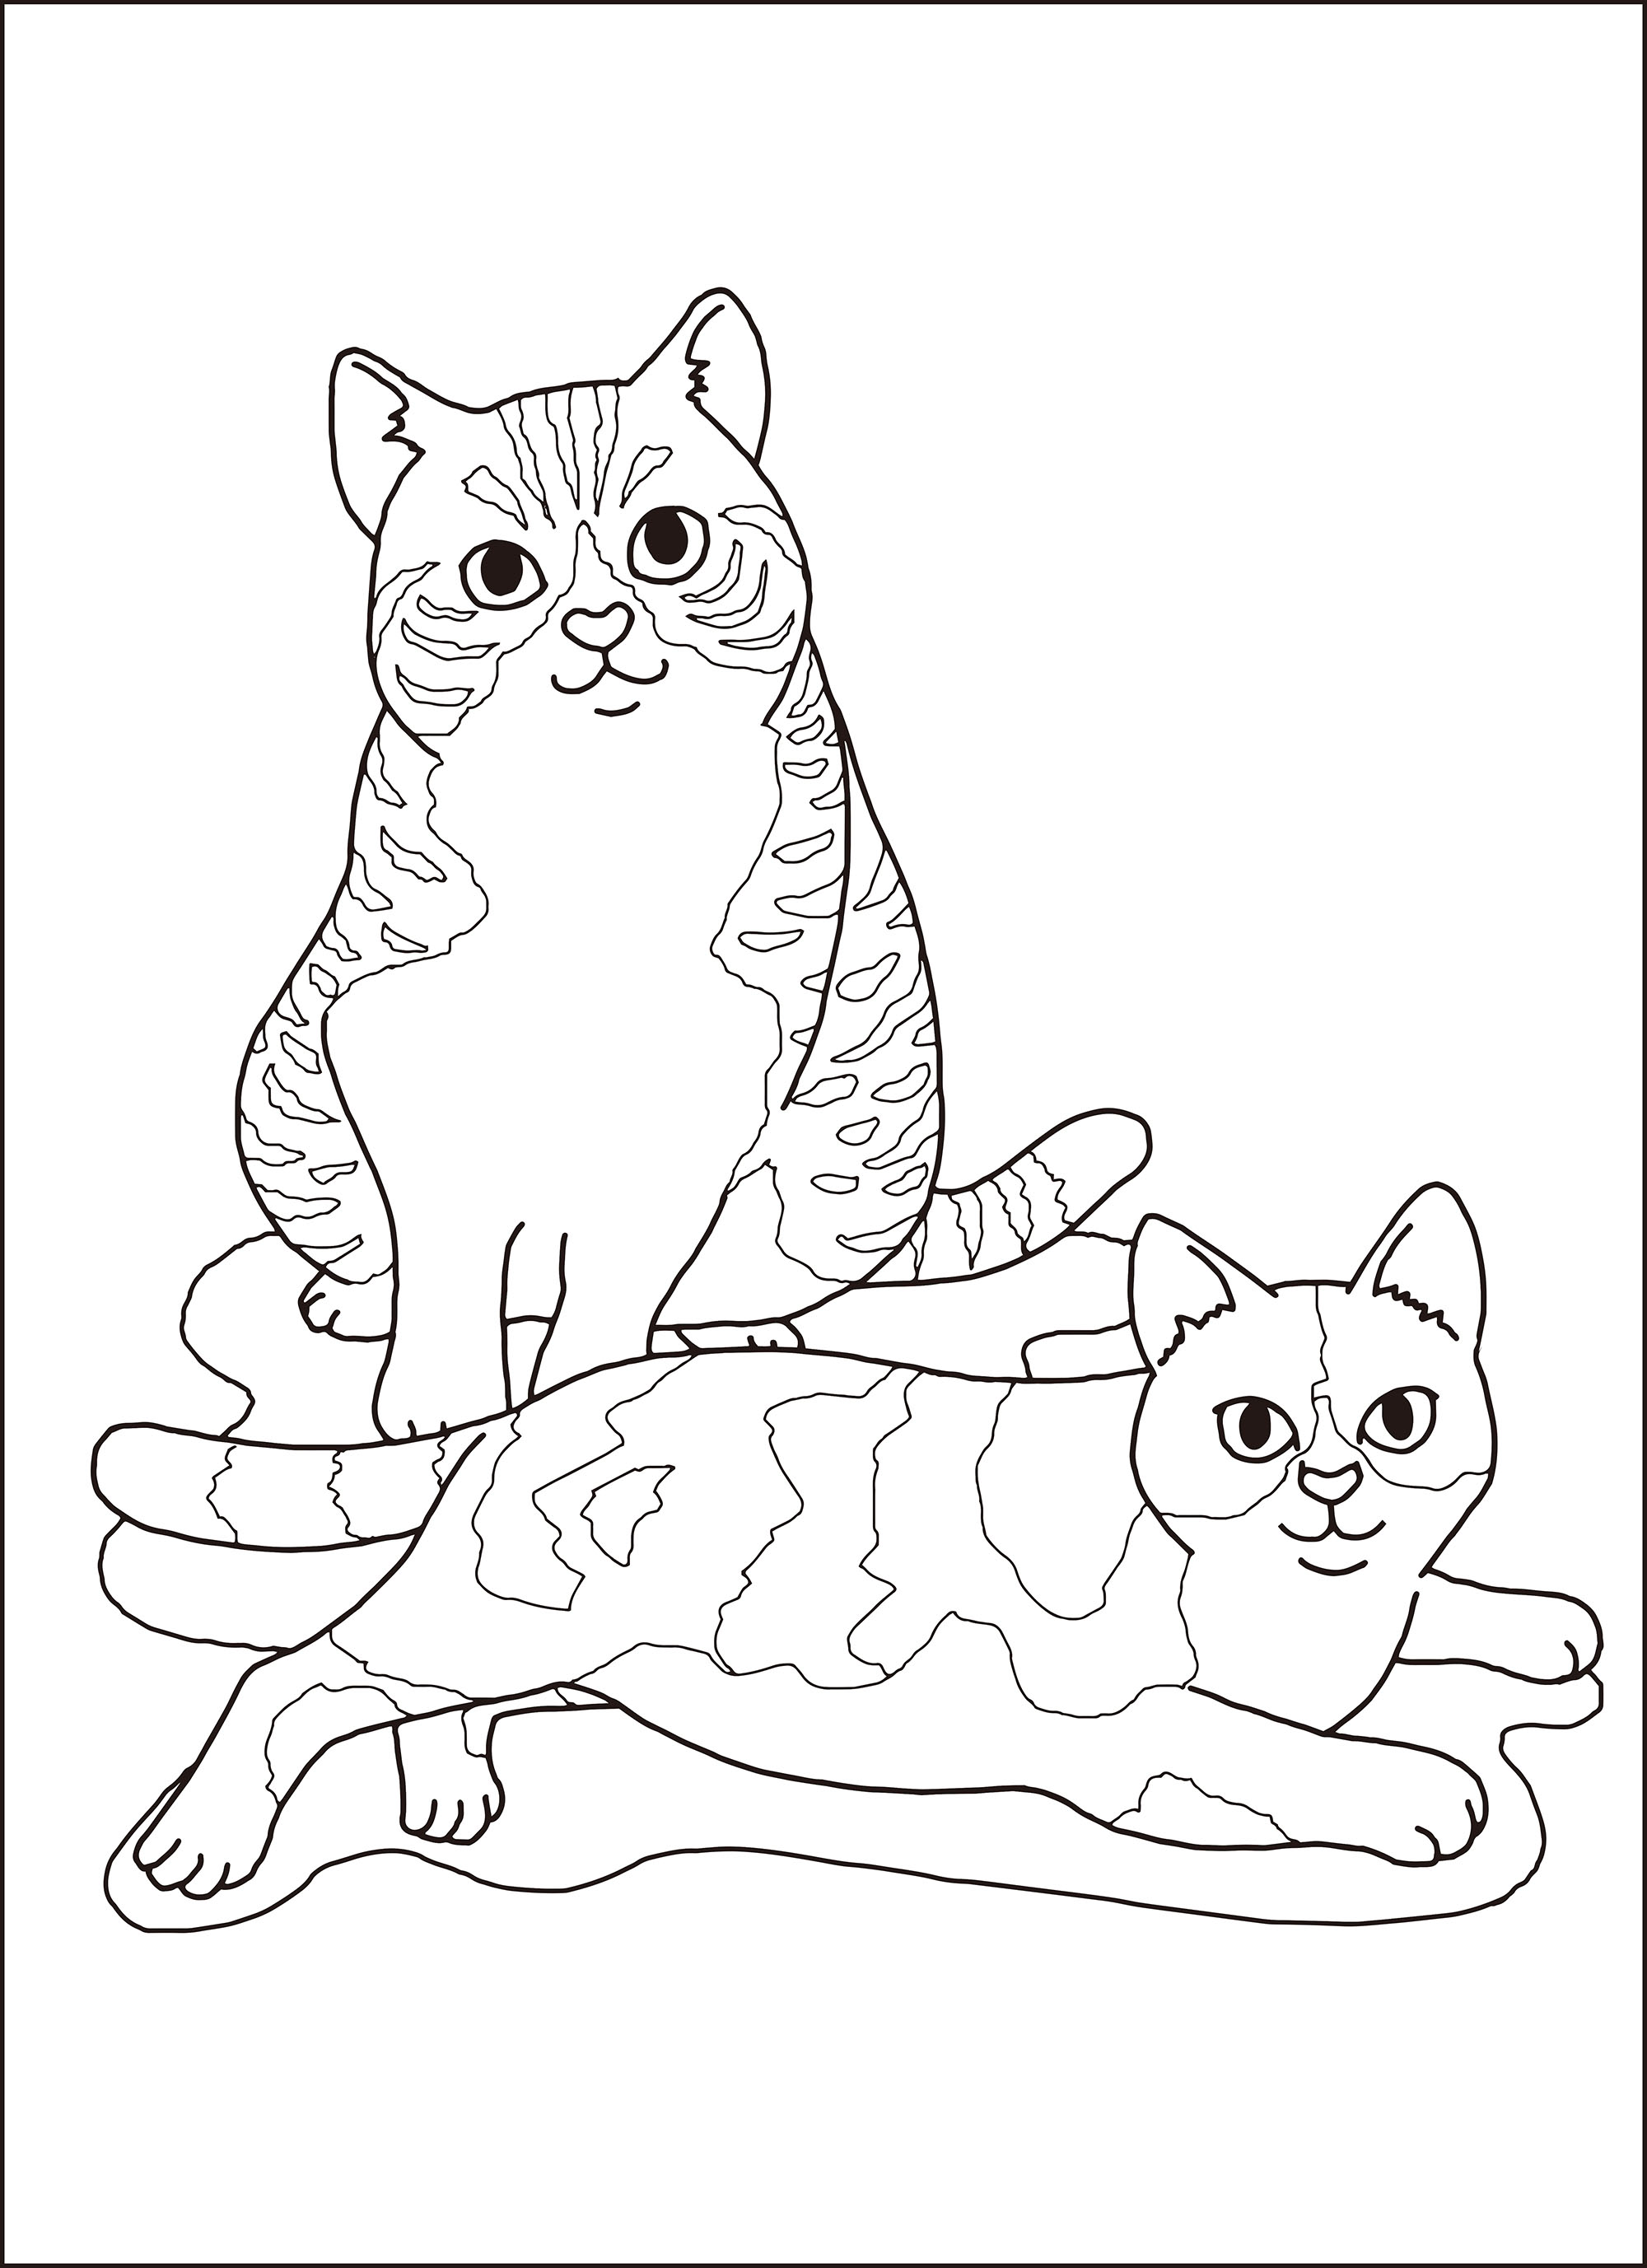 高齢者レク素材 猫 定番塗り絵 介護レク広場 レク素材やレクネタ 企画書 の無料ダウンロード